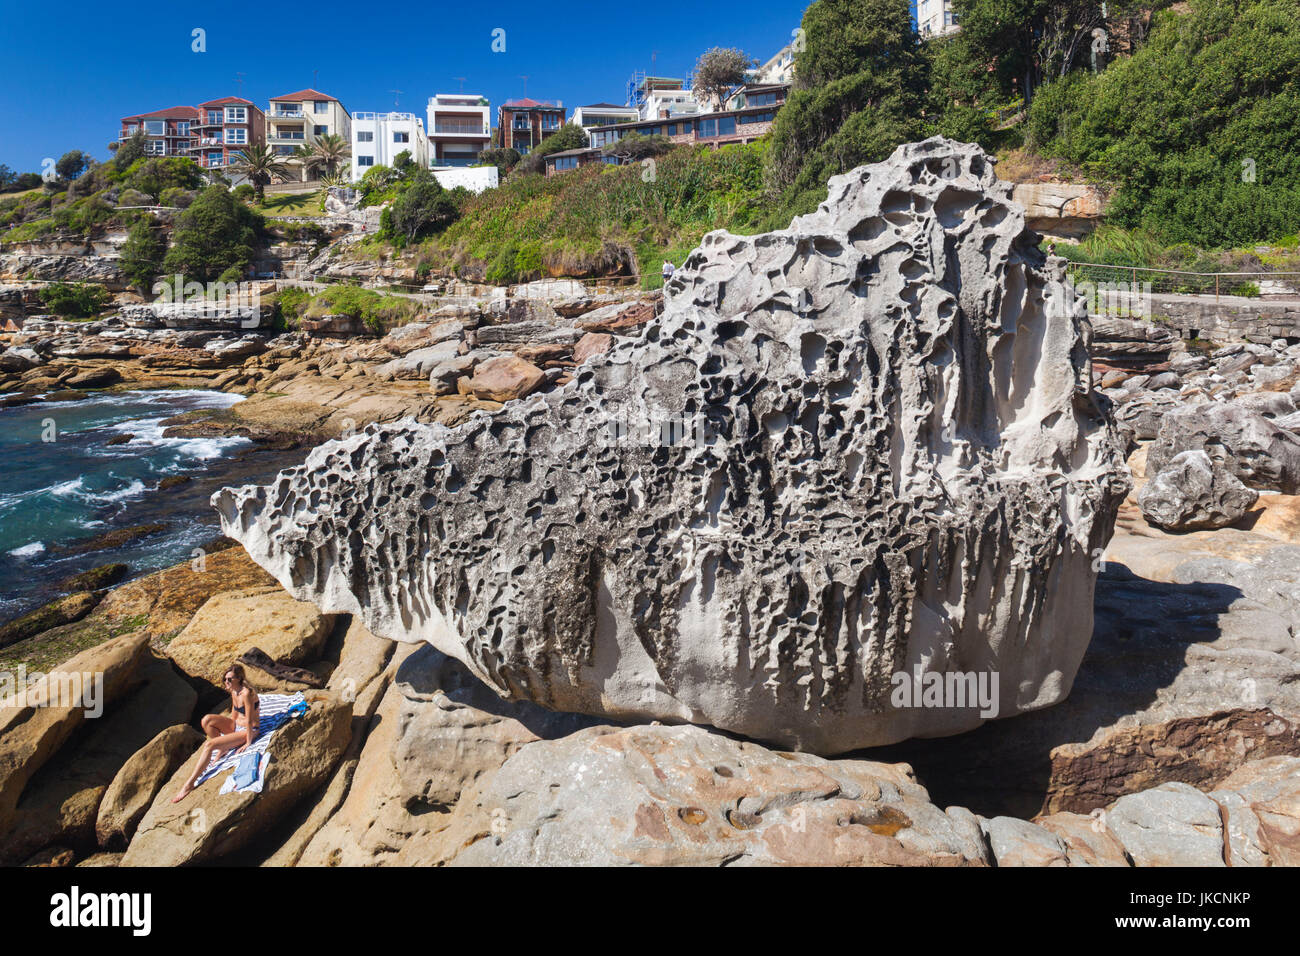 Australia, Nueva Gales del Sur, Nueva Gales del Sur, Sydney, Bondi Beach, costa rocosa Foto de stock